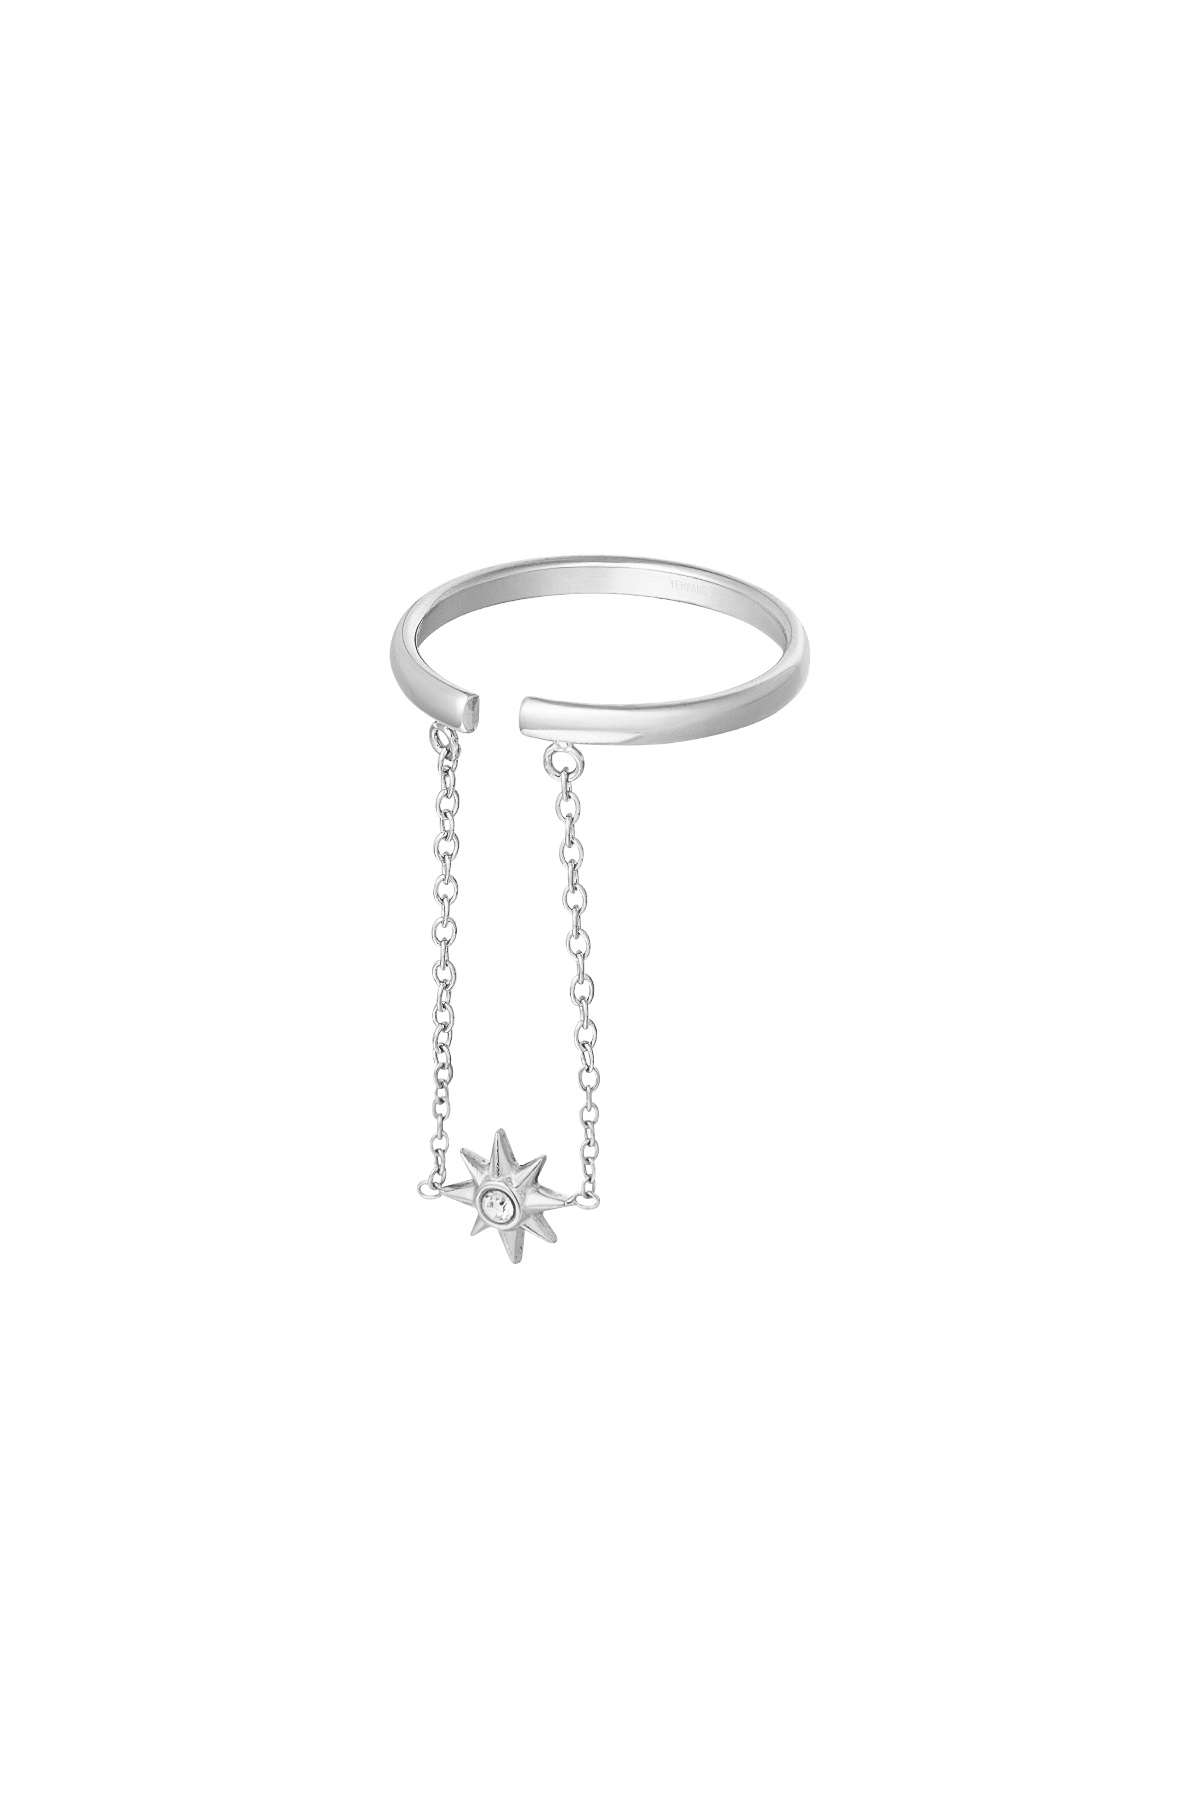 Anello stella con catena - argento h5 